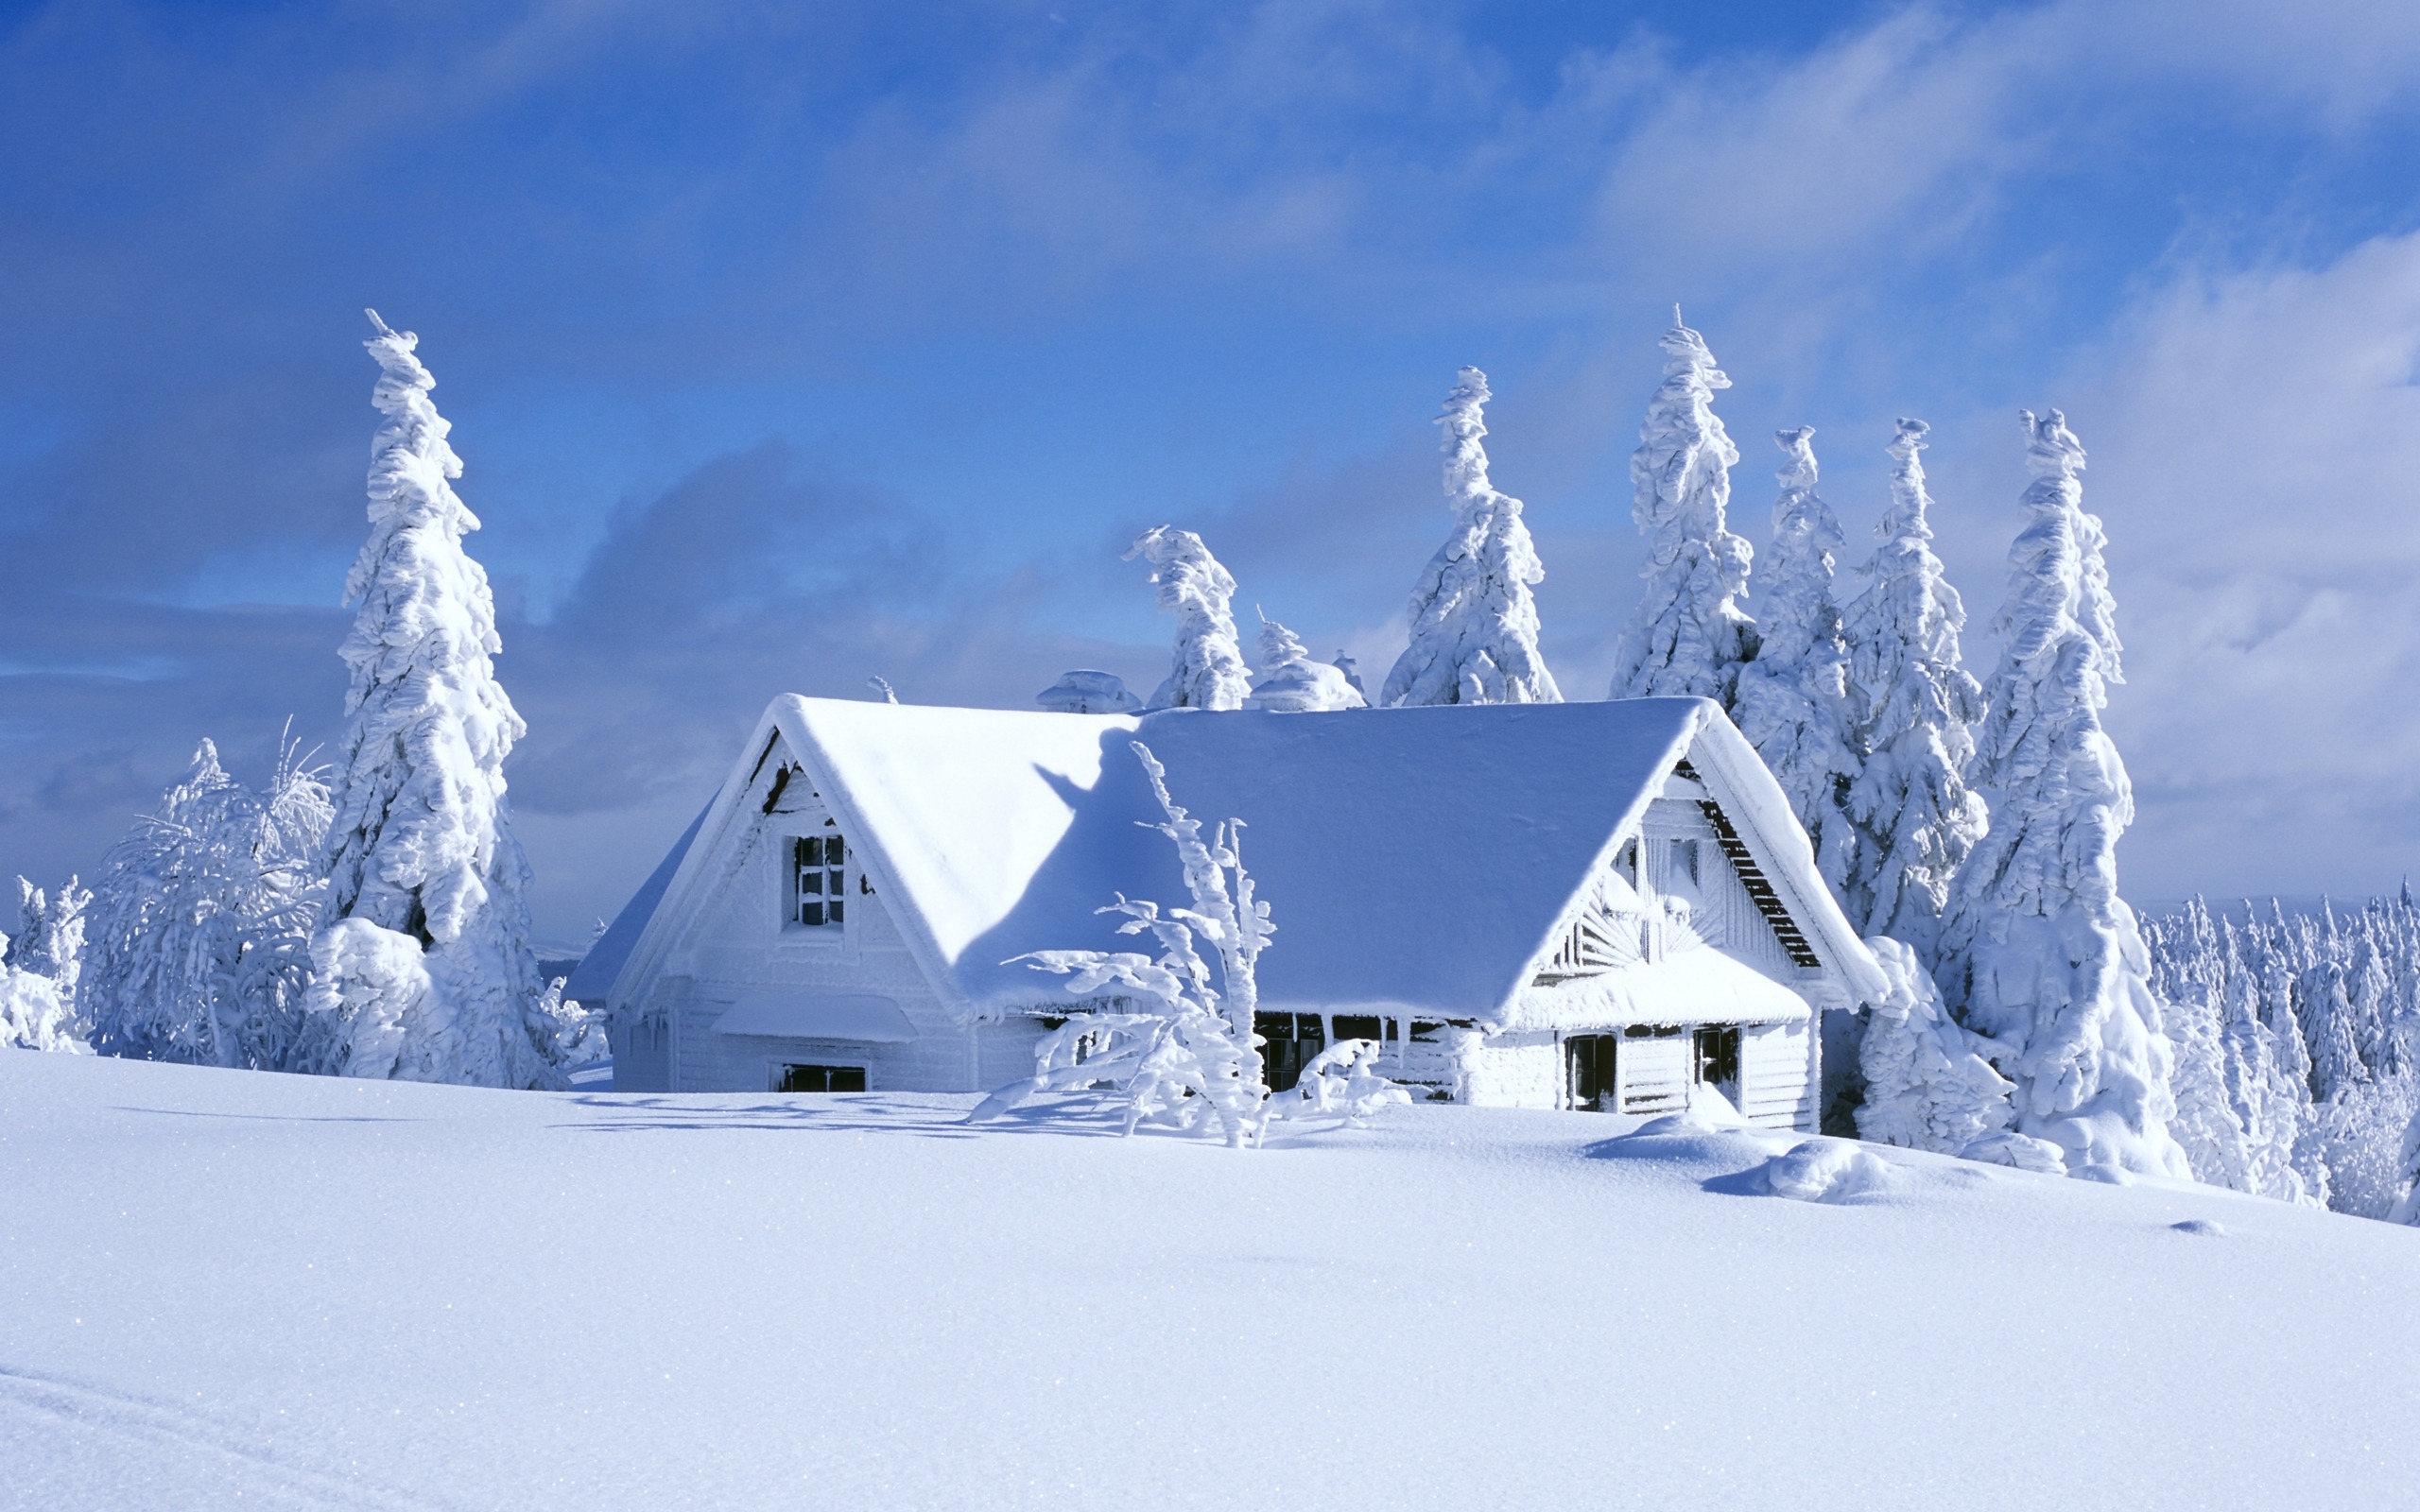 Скачать картинку Зима, Снег, Дом, Фотографии в телефон бесплатно.